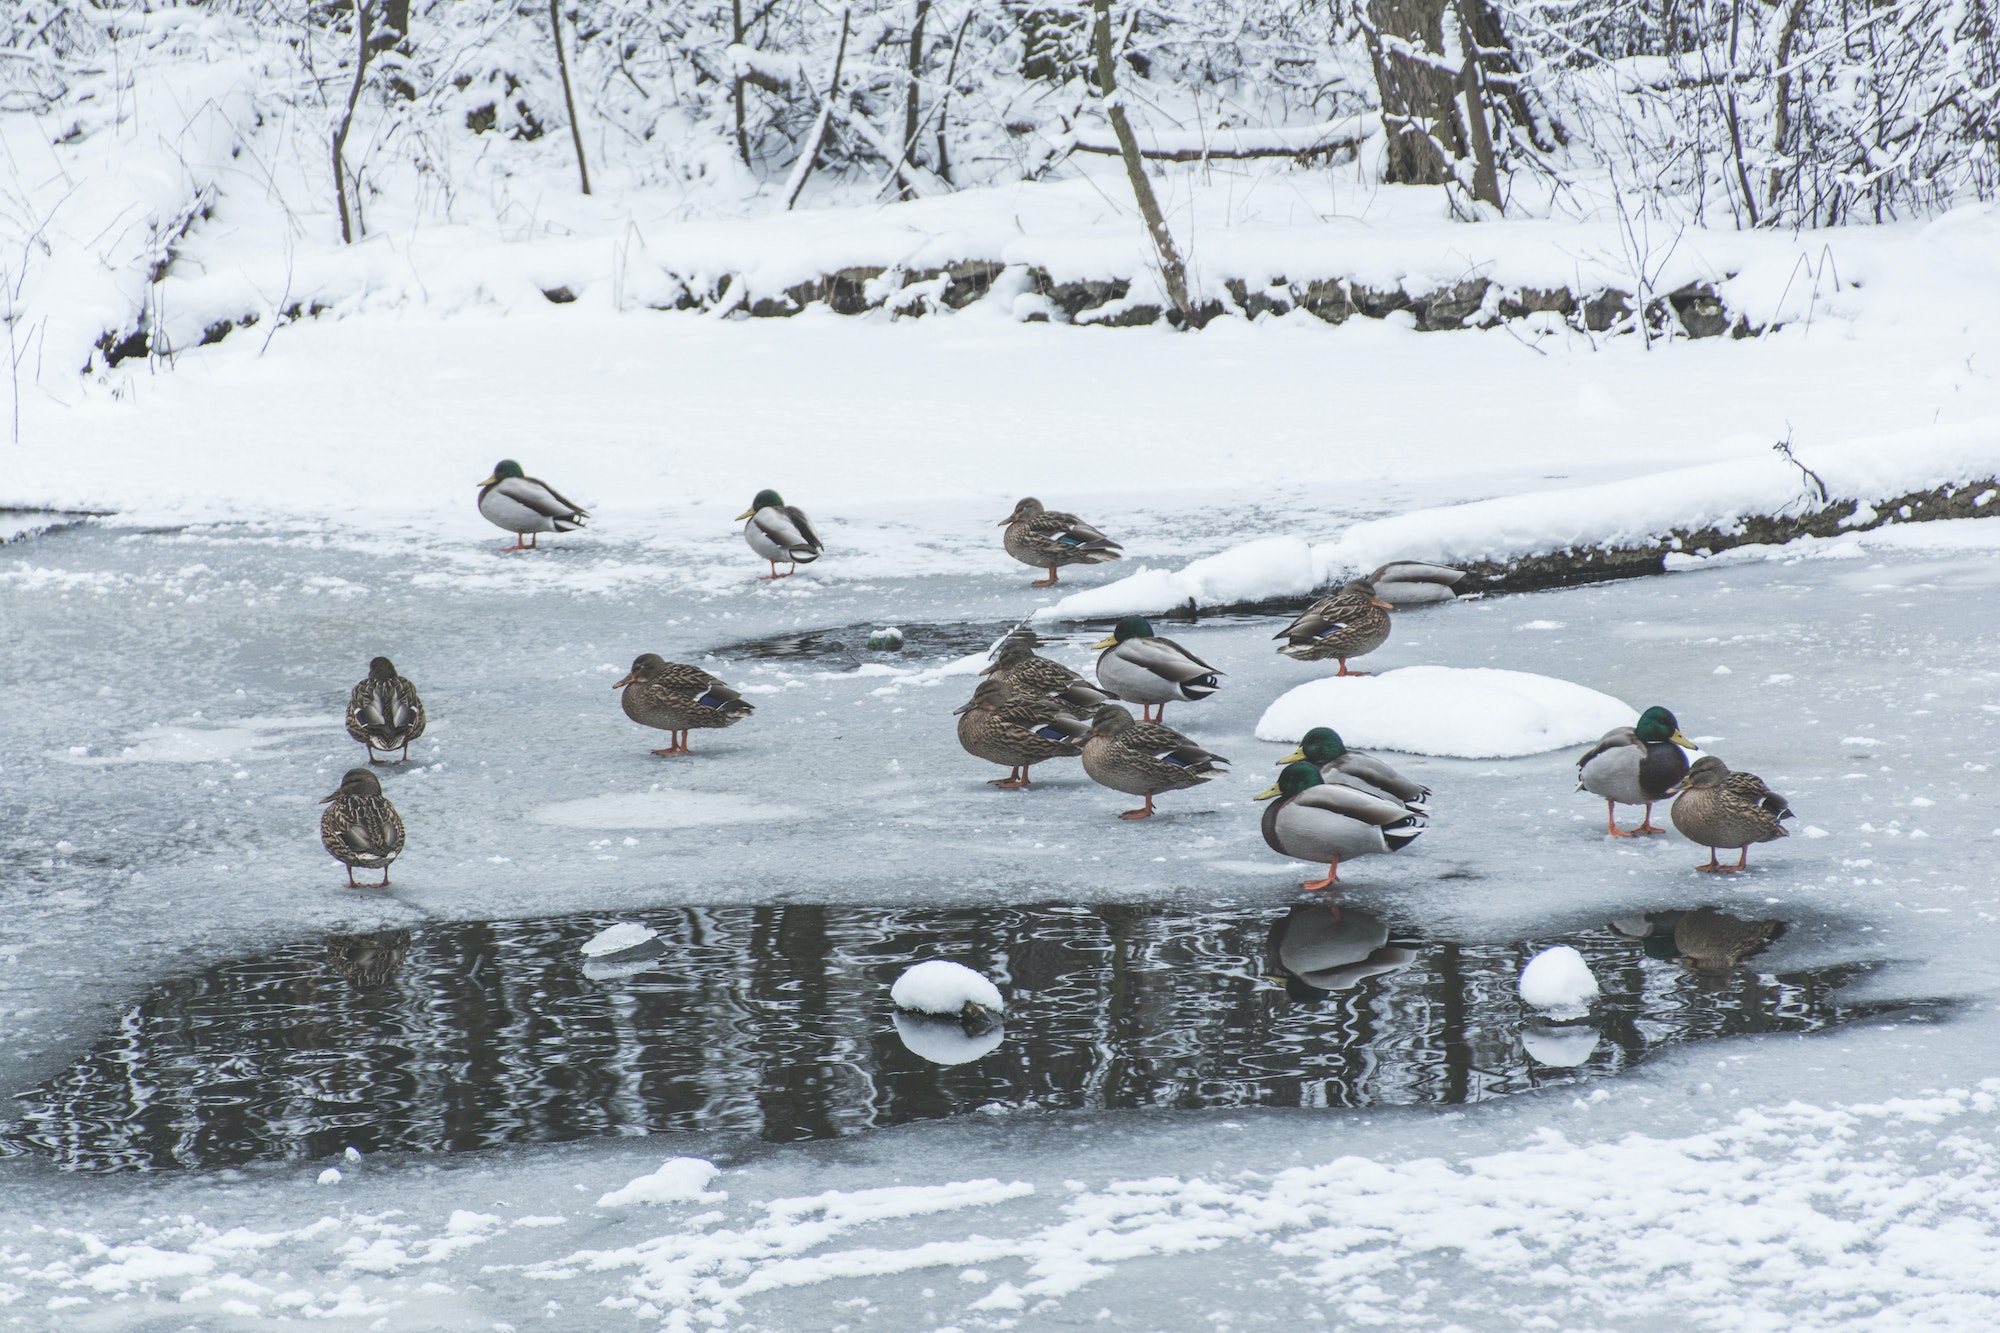 ducks on frozen pond in snowy park